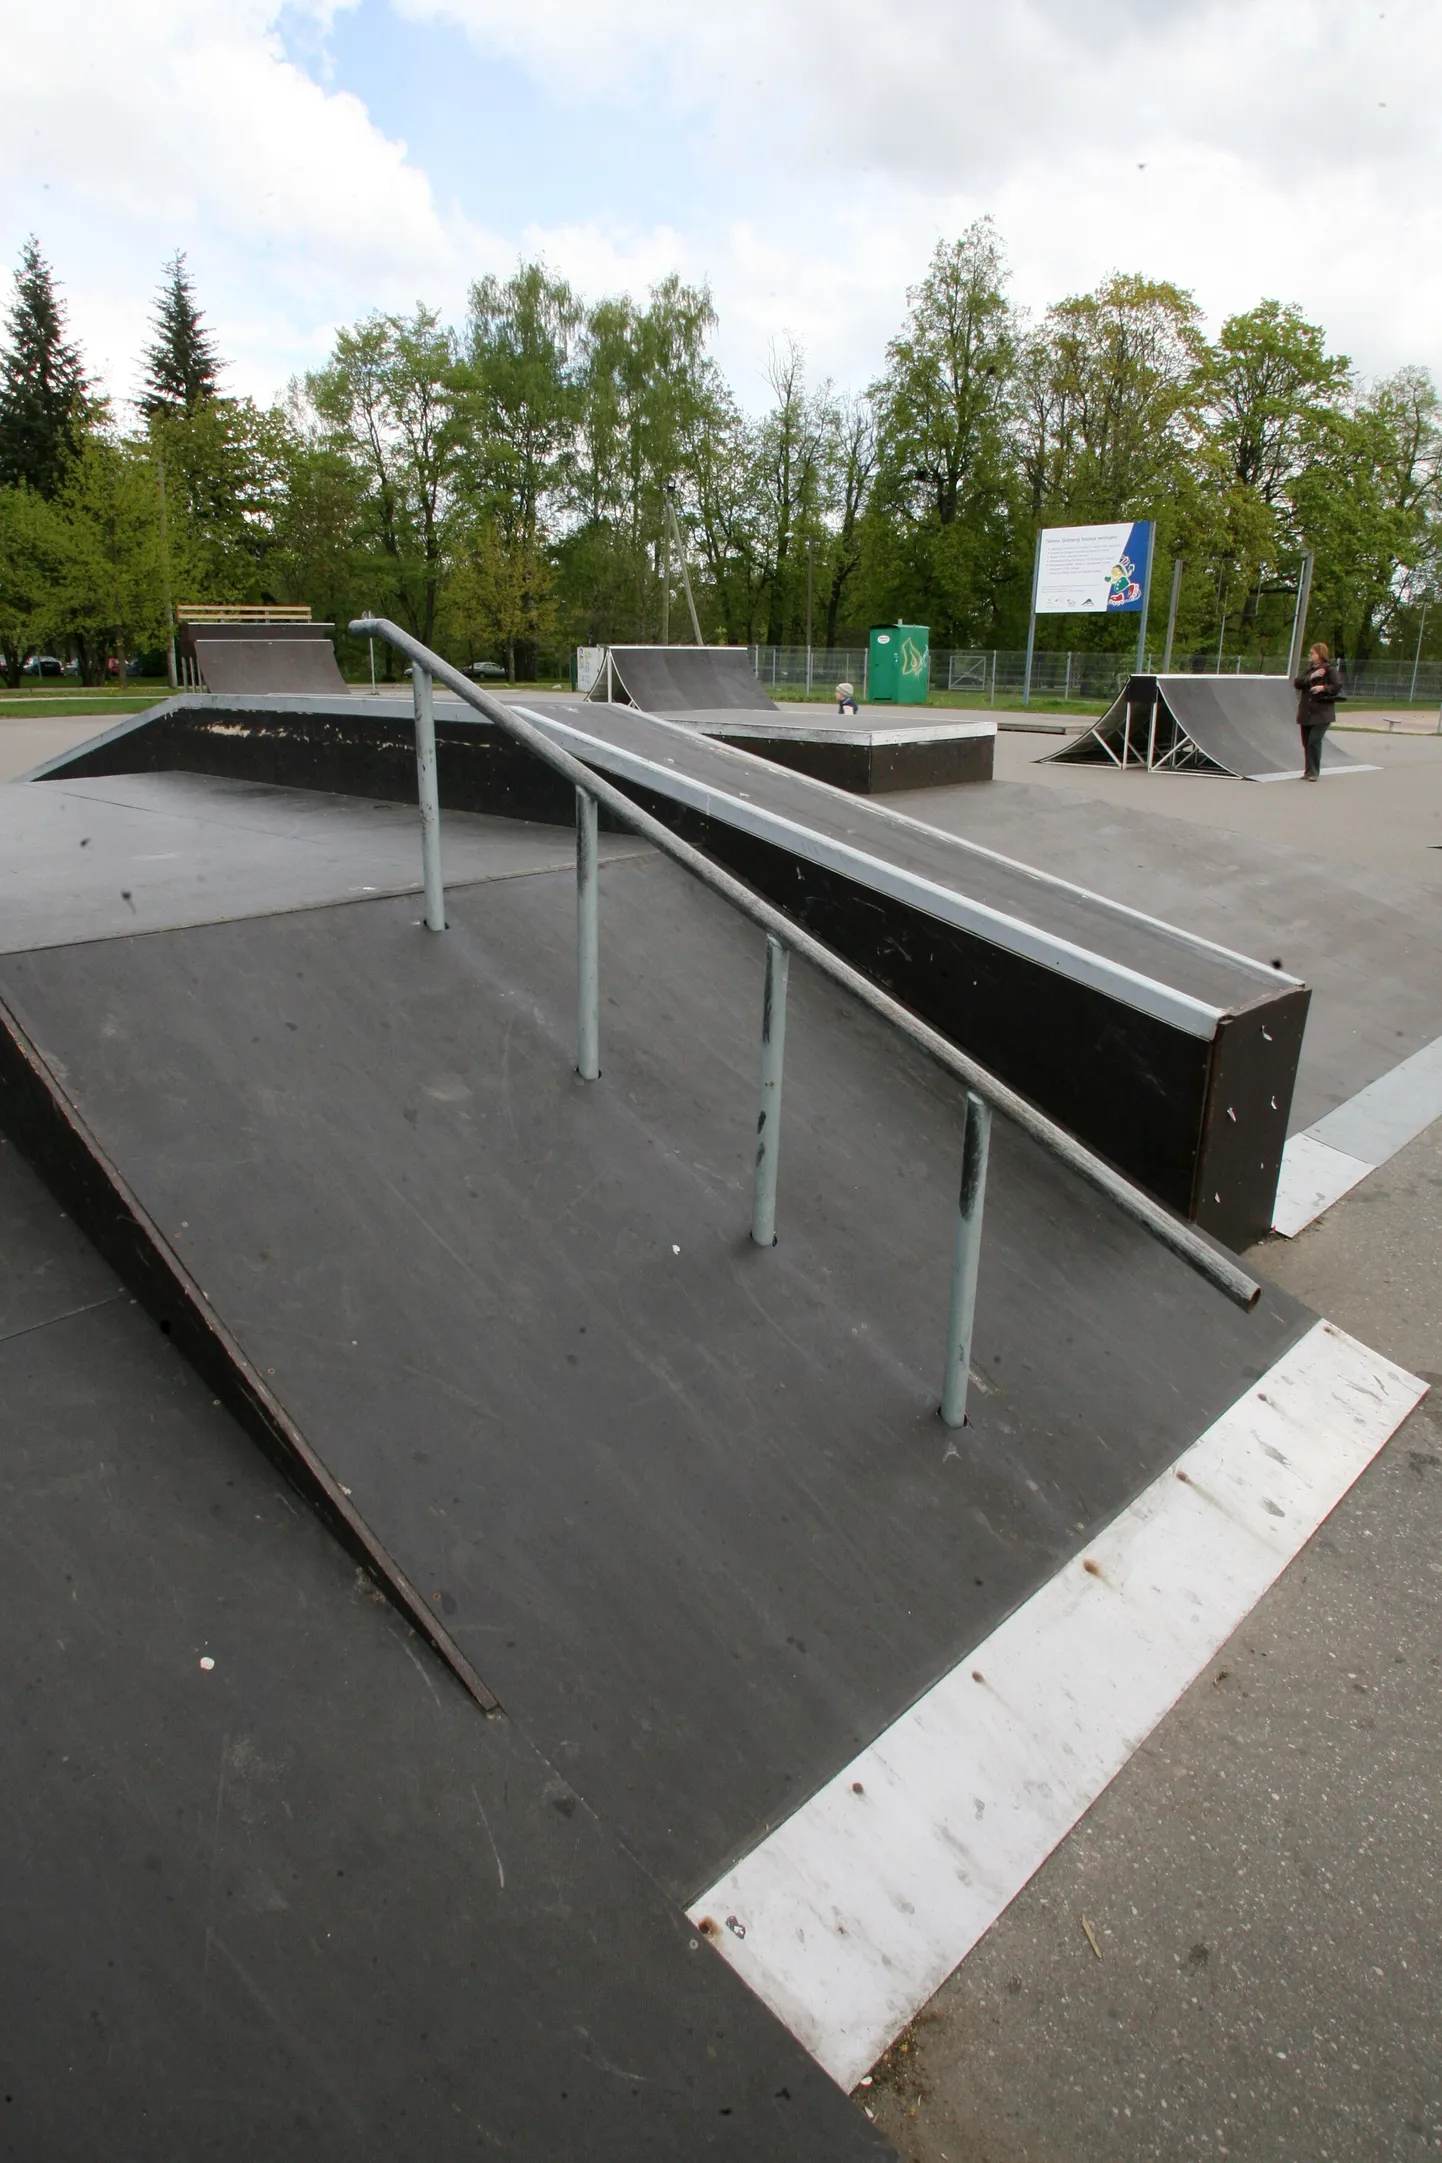 Kasutusloa sai ka hiljuti uuenduskuuri läbinud Tähtvere puhkepargi skatepark.